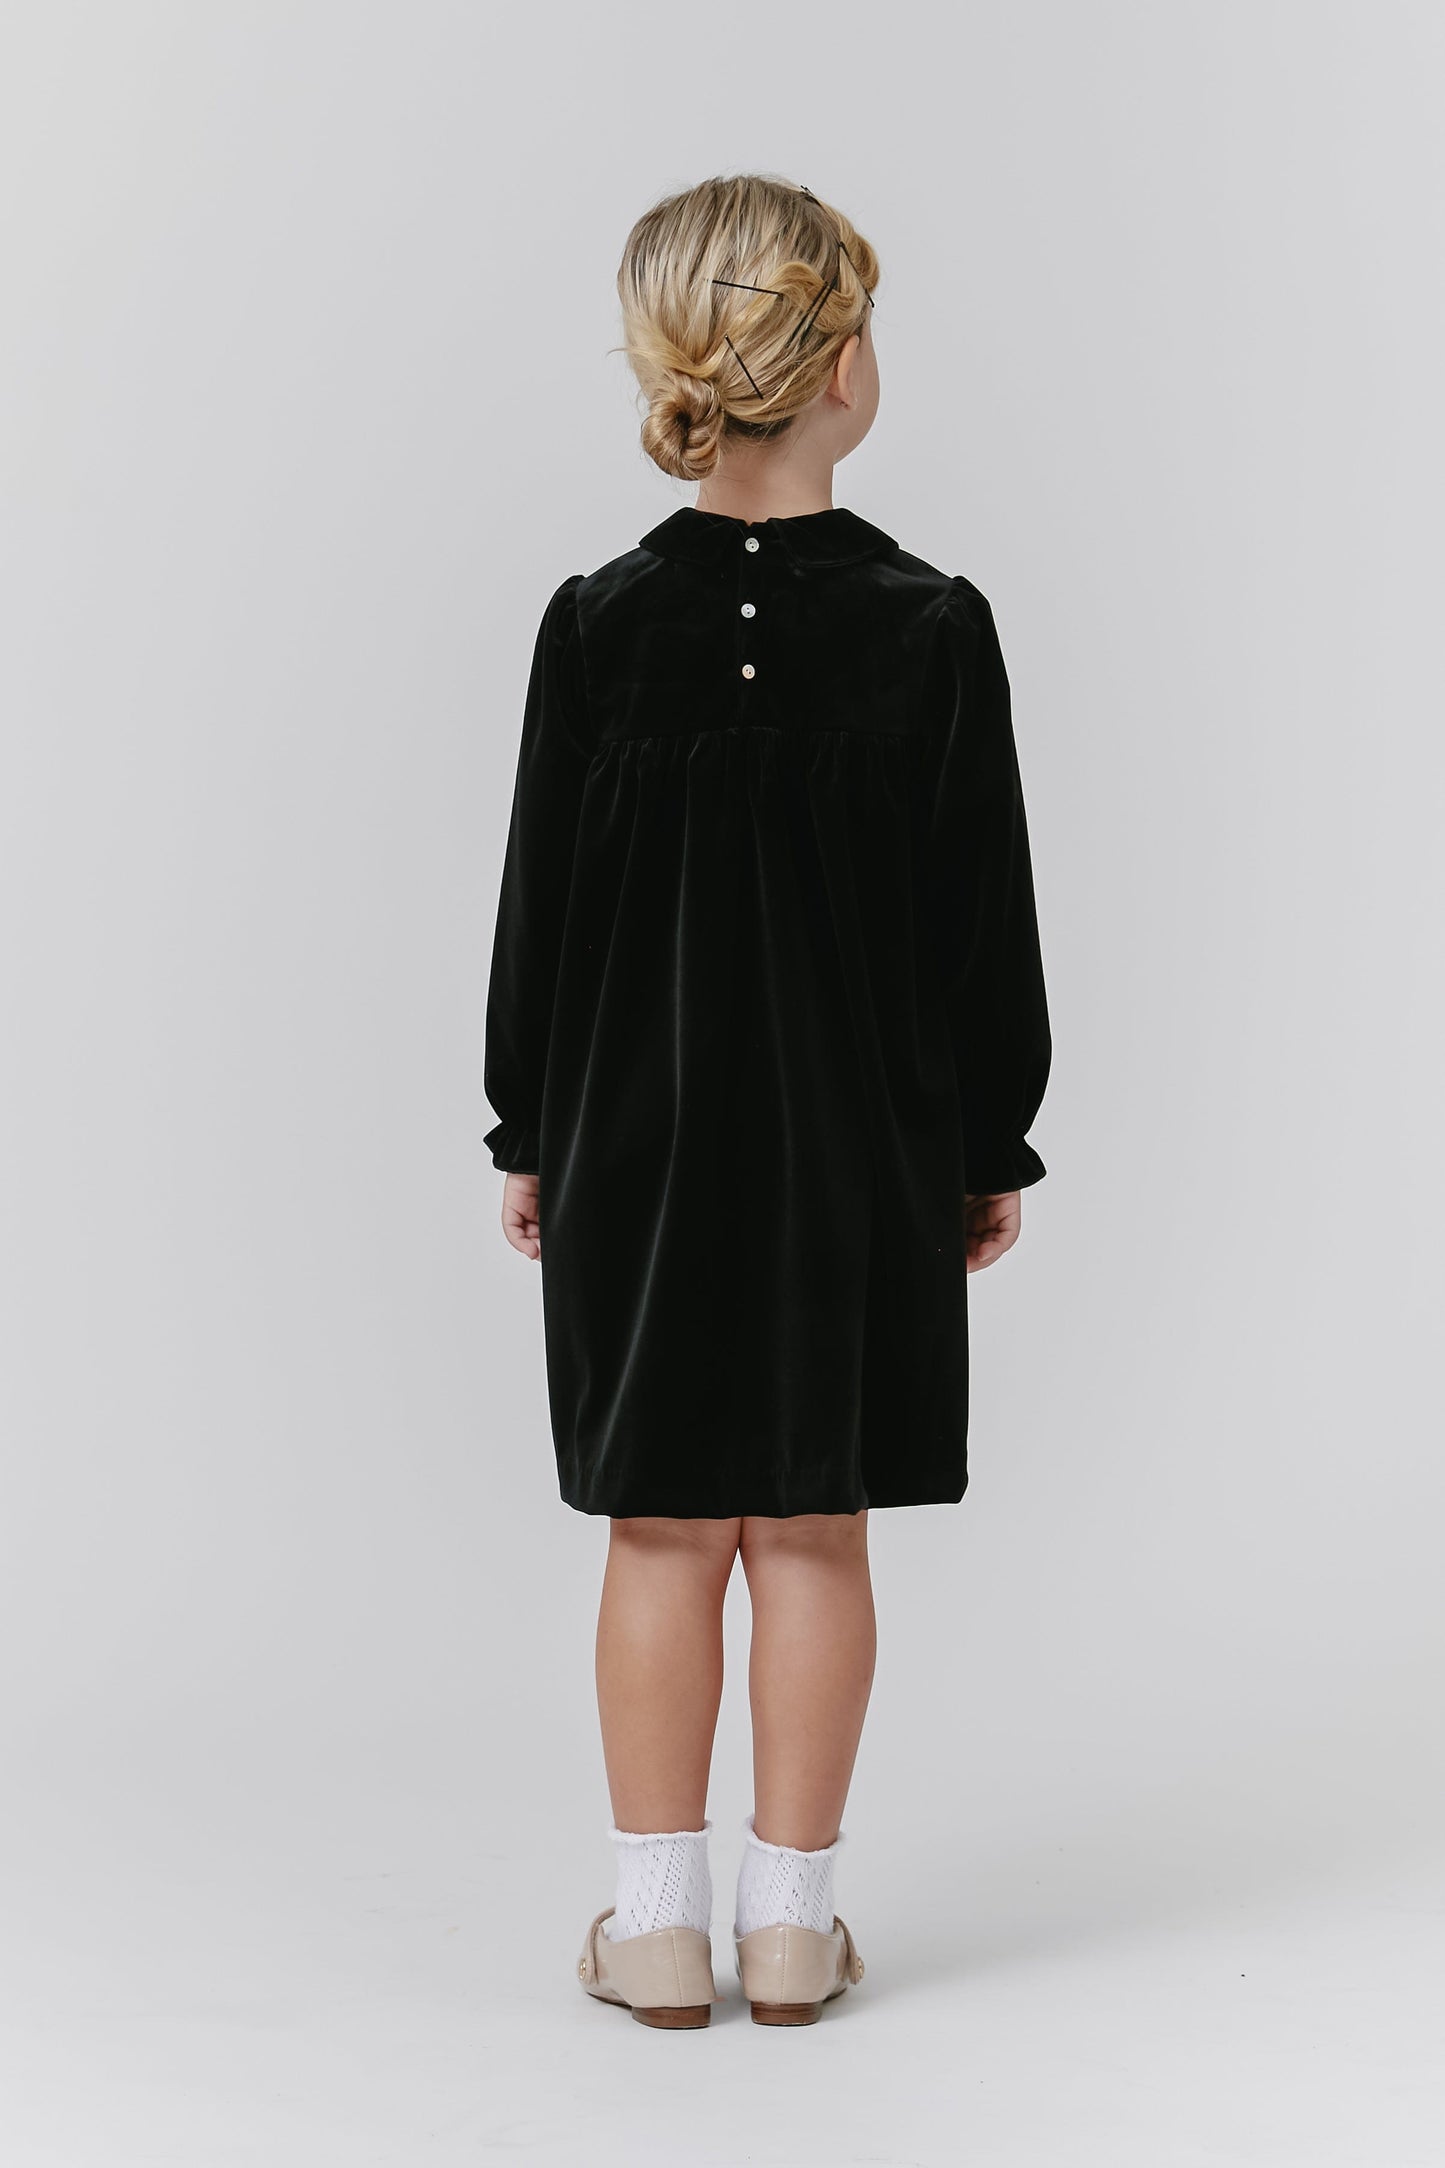 
                  
                    Velvet Embroidered Dress - Black
                  
                